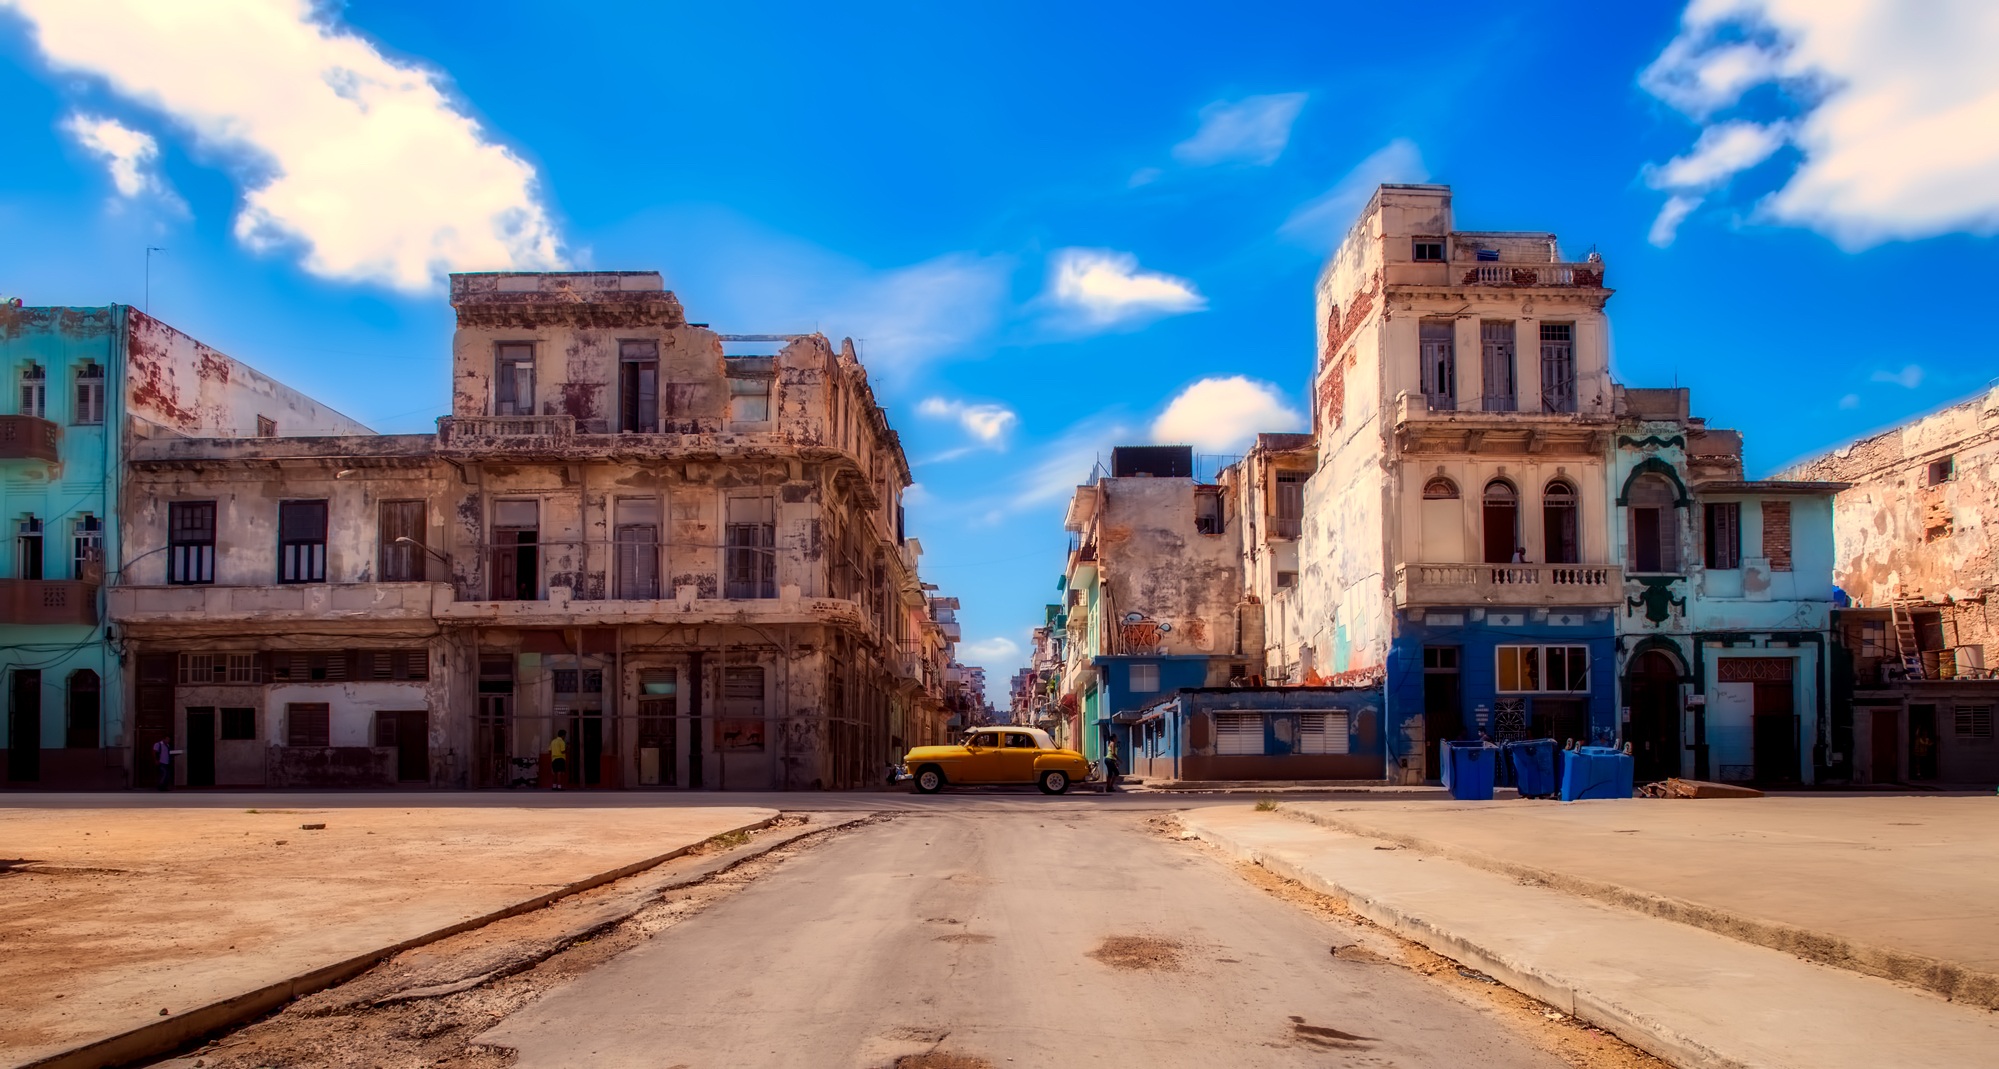 Havana, Cuba by 12019